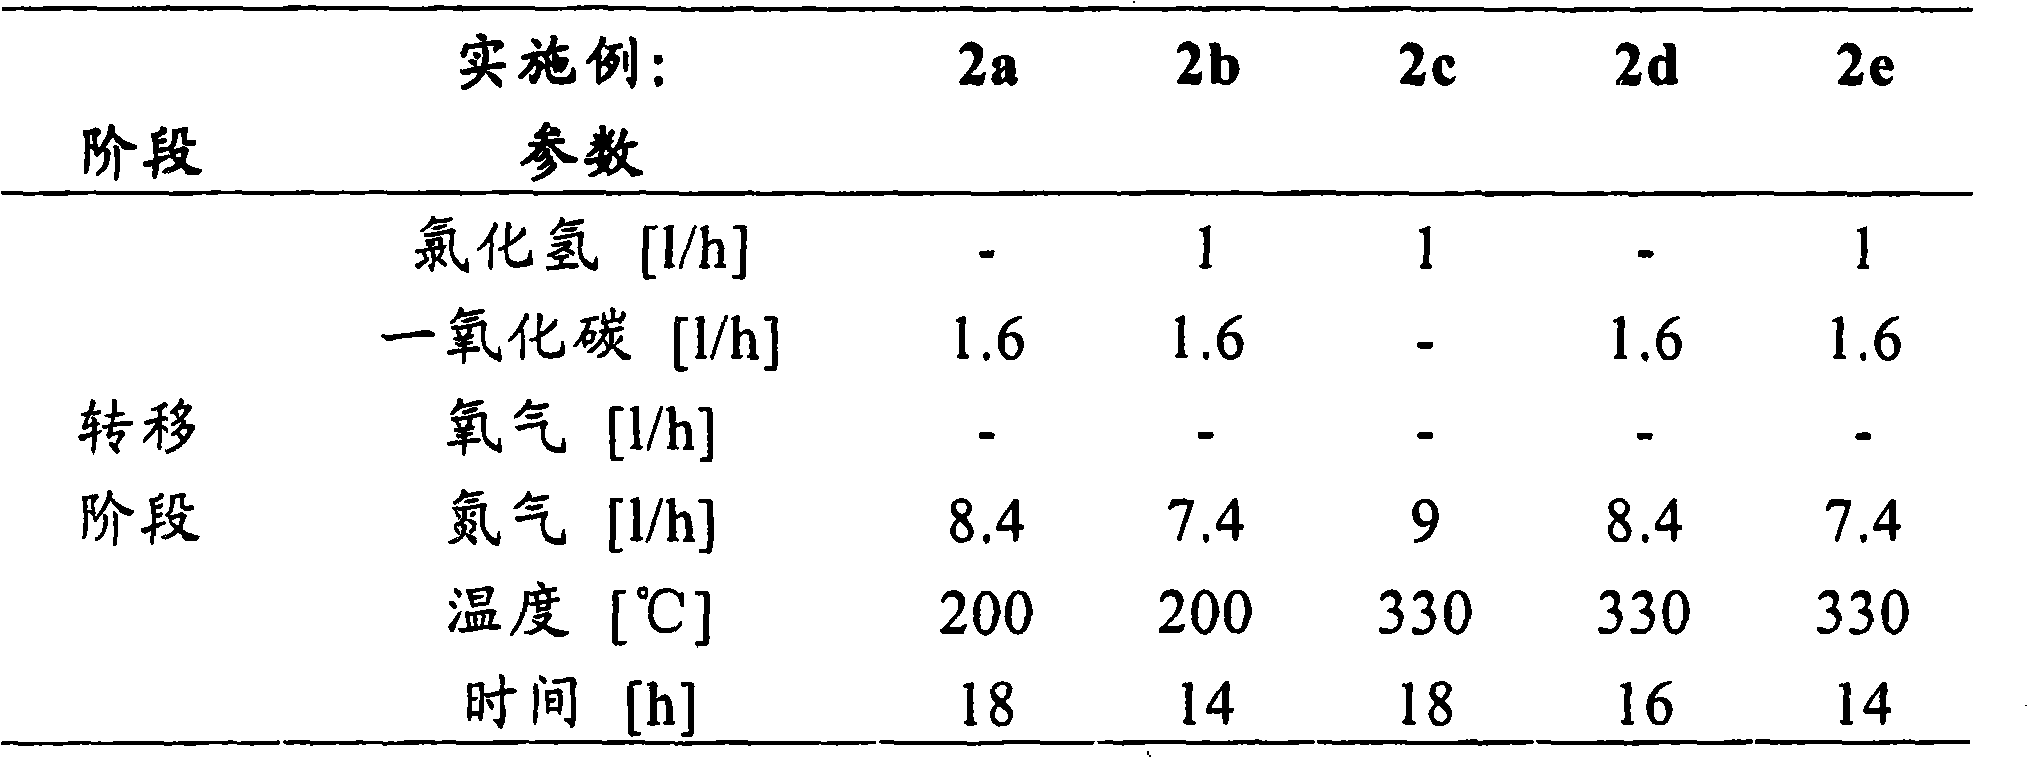 Method for generating metallic ruthenium or ruthenium compounds from solids containing ruthenium